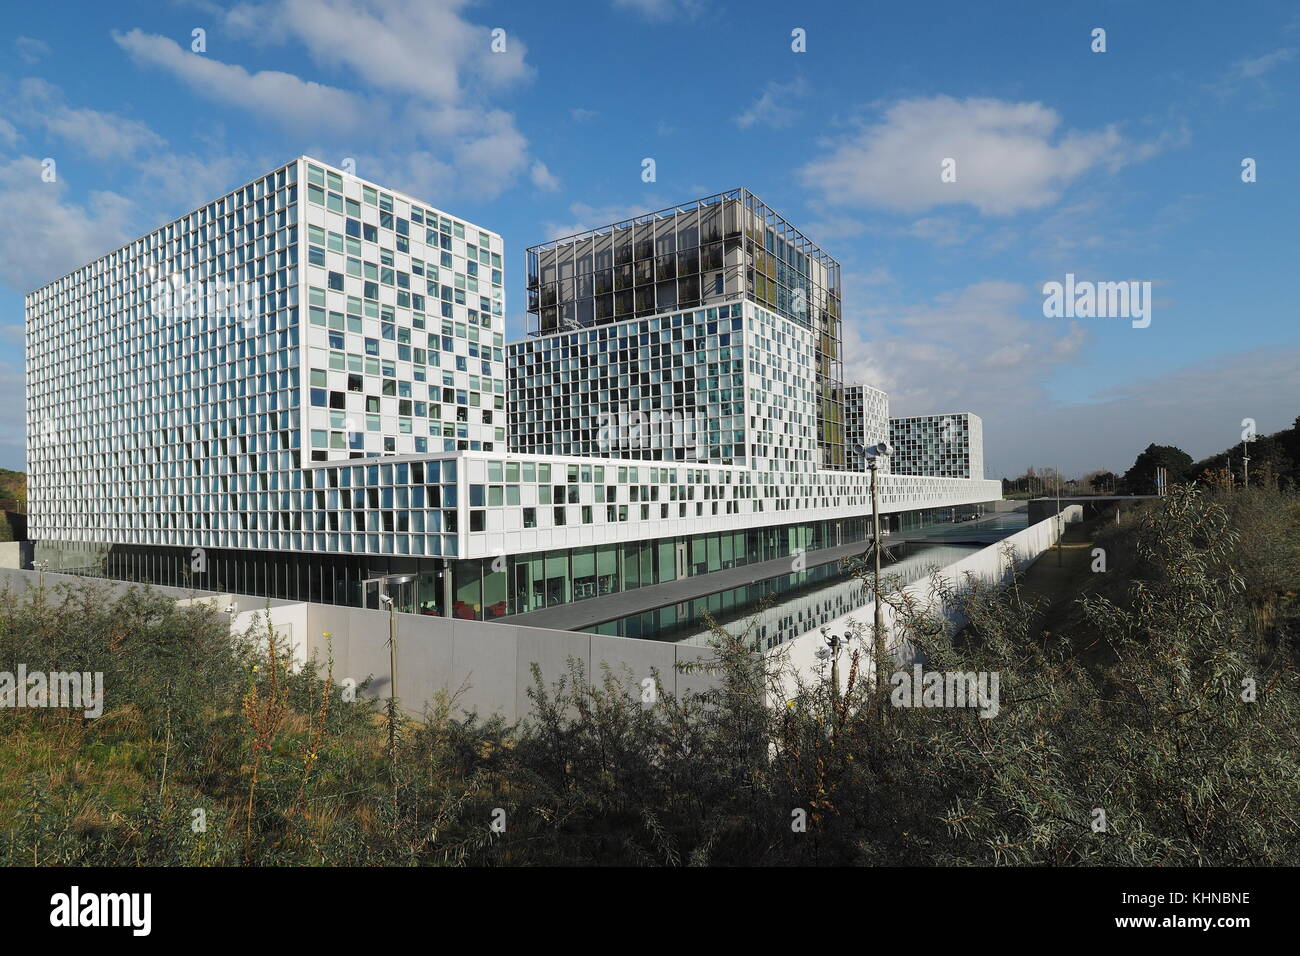 La Haya, Holanda - 3 de noviembre de 2017: la nueva corte penal internacional abierto 2016 edificio con foso, situado entre dunas en La Haya. Foto de stock